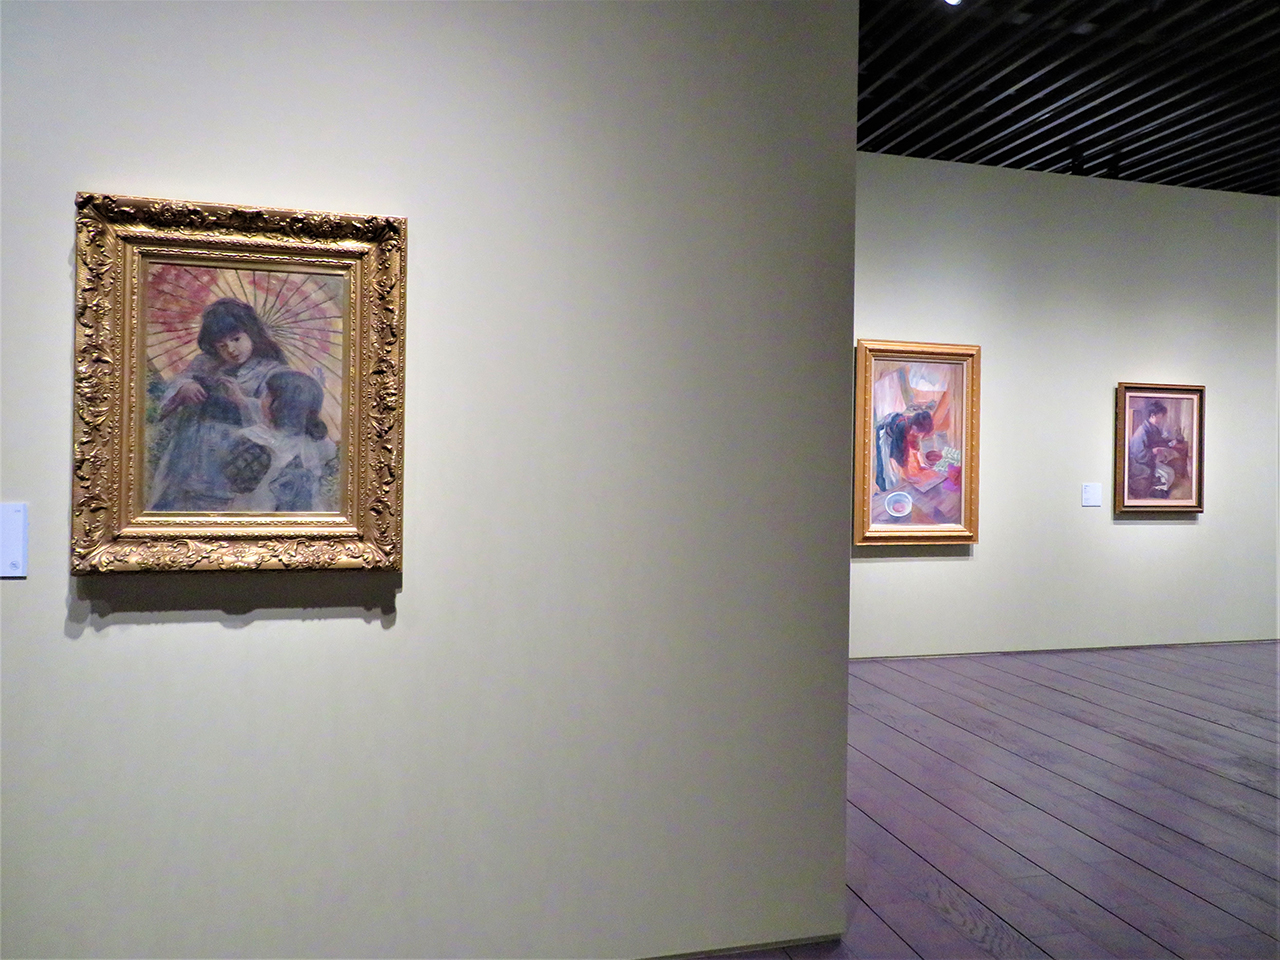 アーティゾン美術館の会場風景（以下同様）。左から、青木繁《二人の少女》1909年　笠間日動美術館。※前期のみ展示。青木が没する2年前に描いた愛らしい少女像。少年時代に洋画の手ほどきを受けた師・森三美の娘たち。坂本繁二郎《張り物》1910年　個人蔵。同《新聞》1910年　個人蔵。